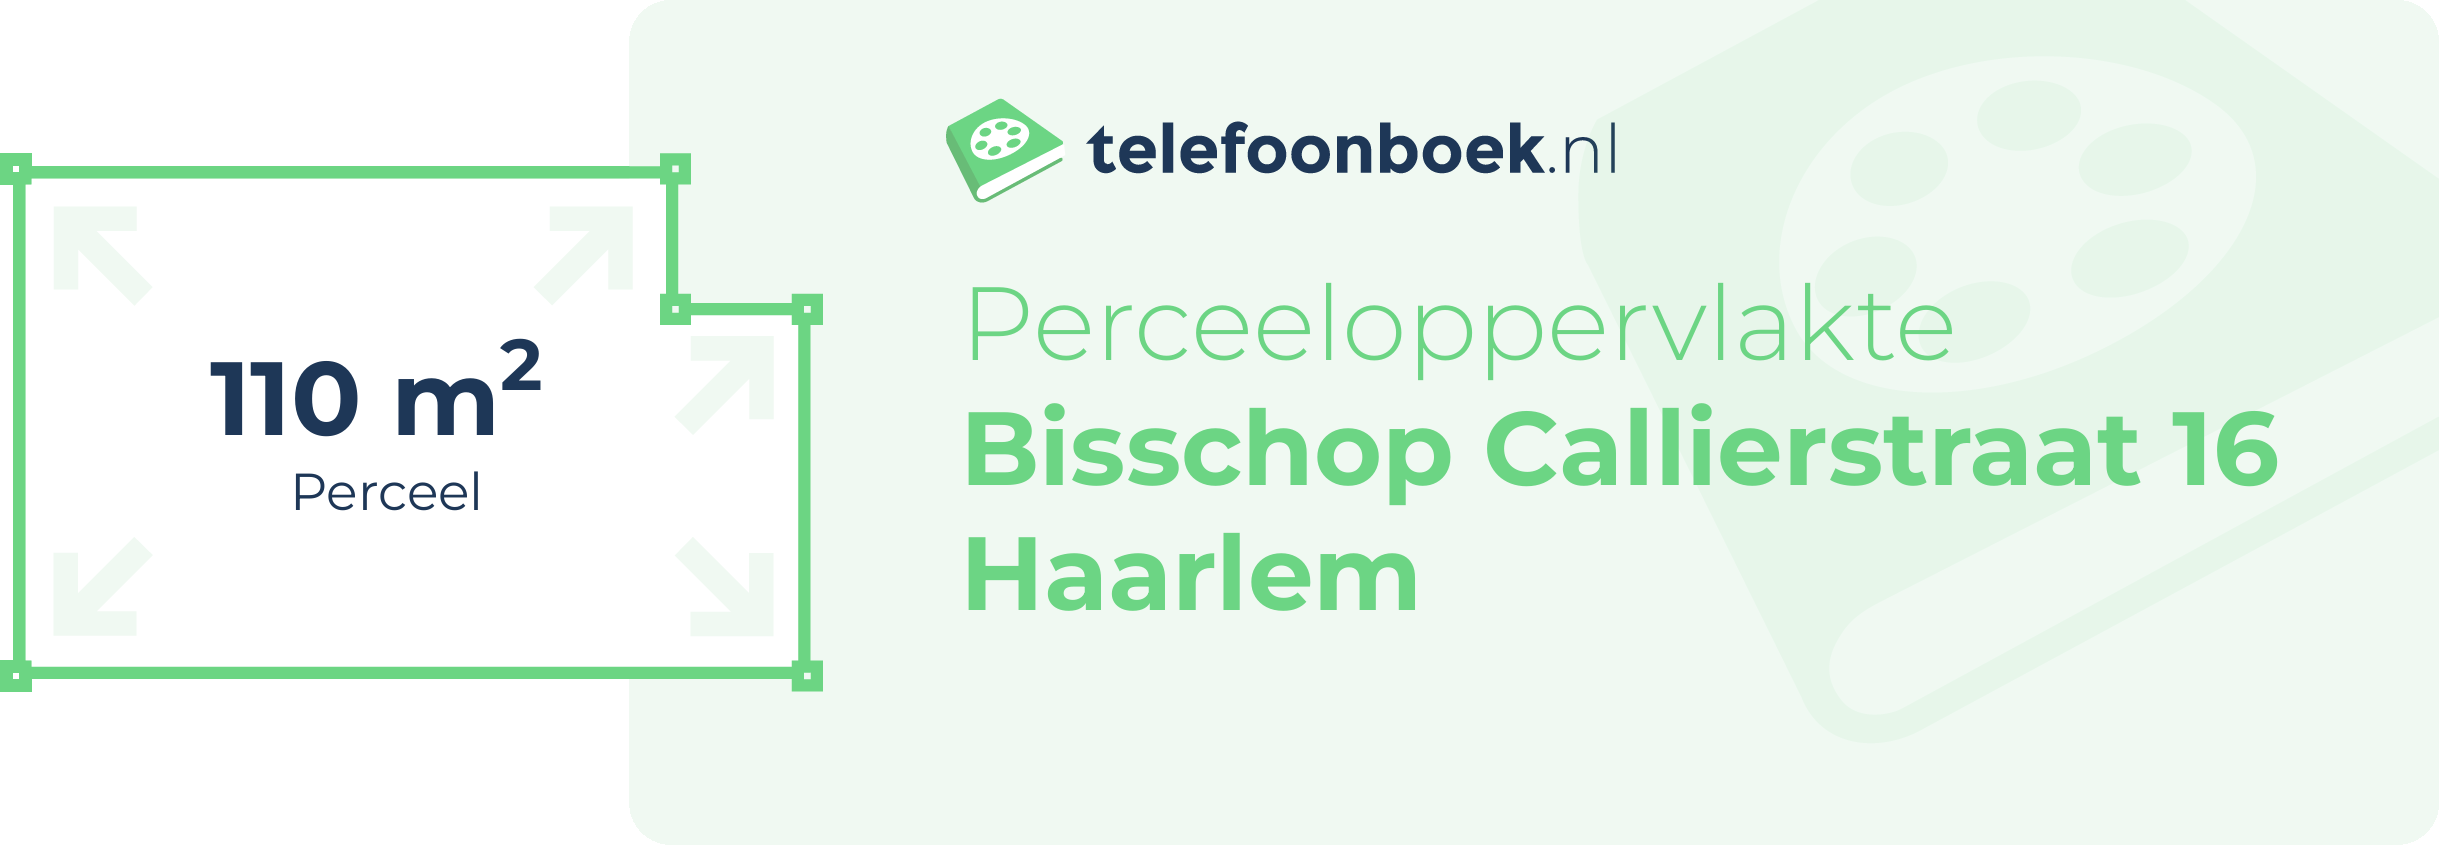 Perceeloppervlakte Bisschop Callierstraat 16 Haarlem